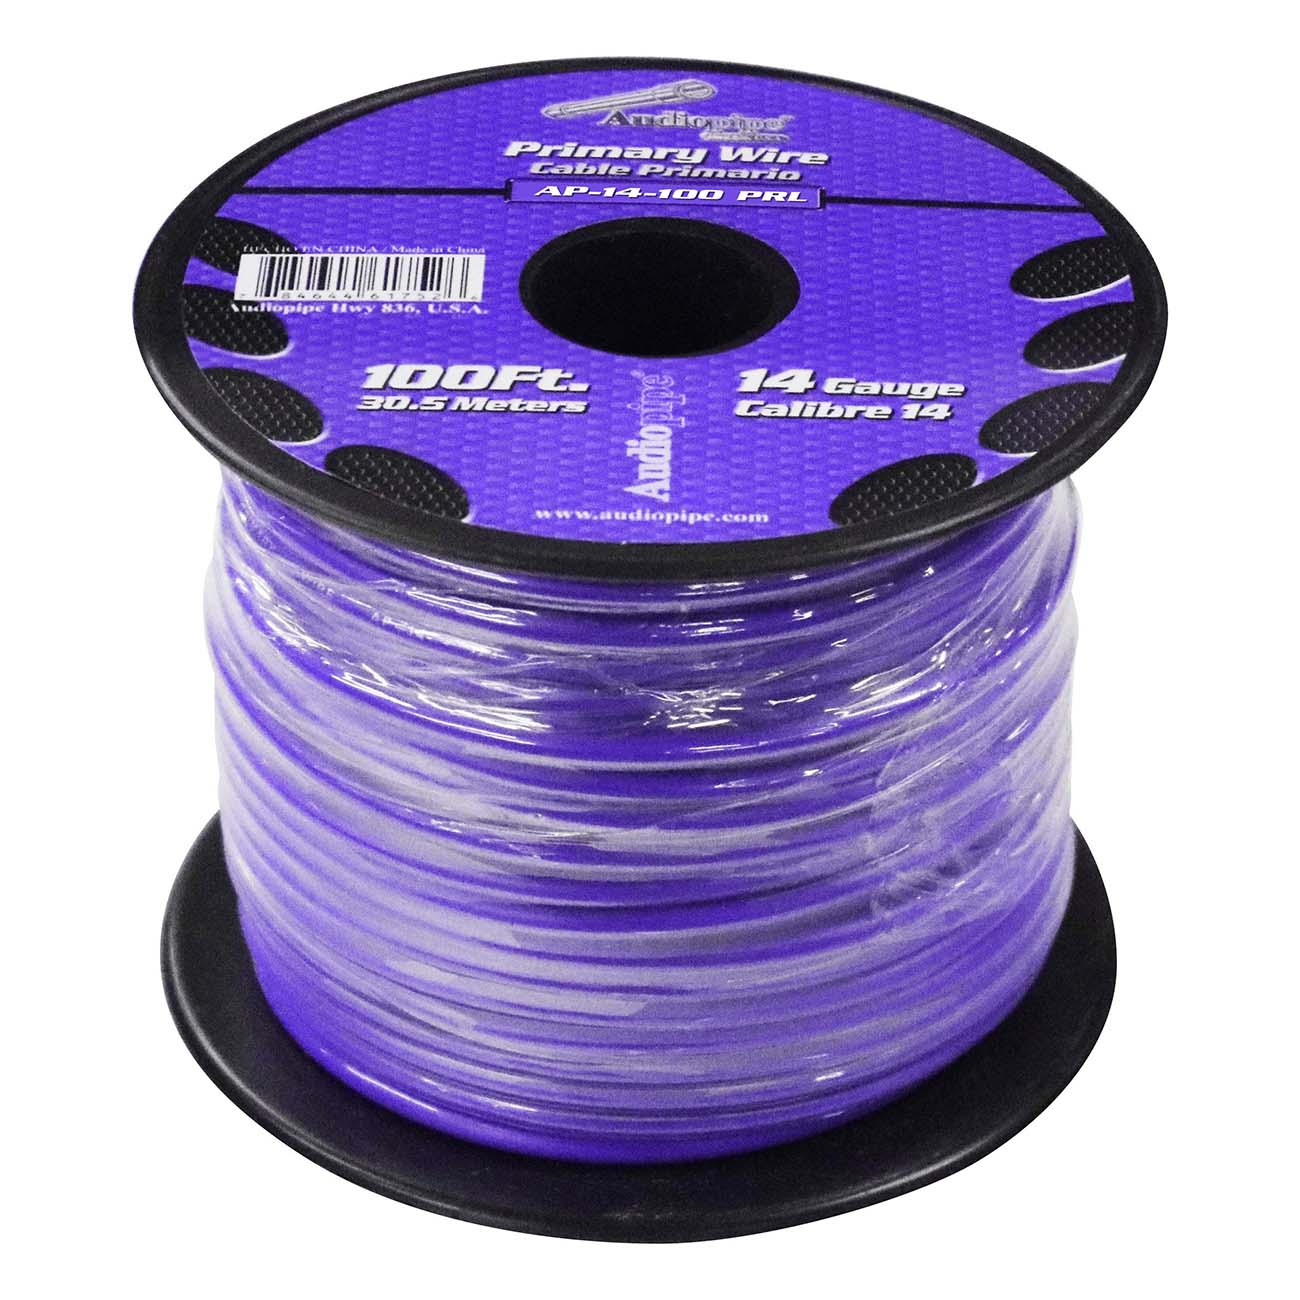 Audiopipe 14 Gauge 100ft Purple Primary Wire